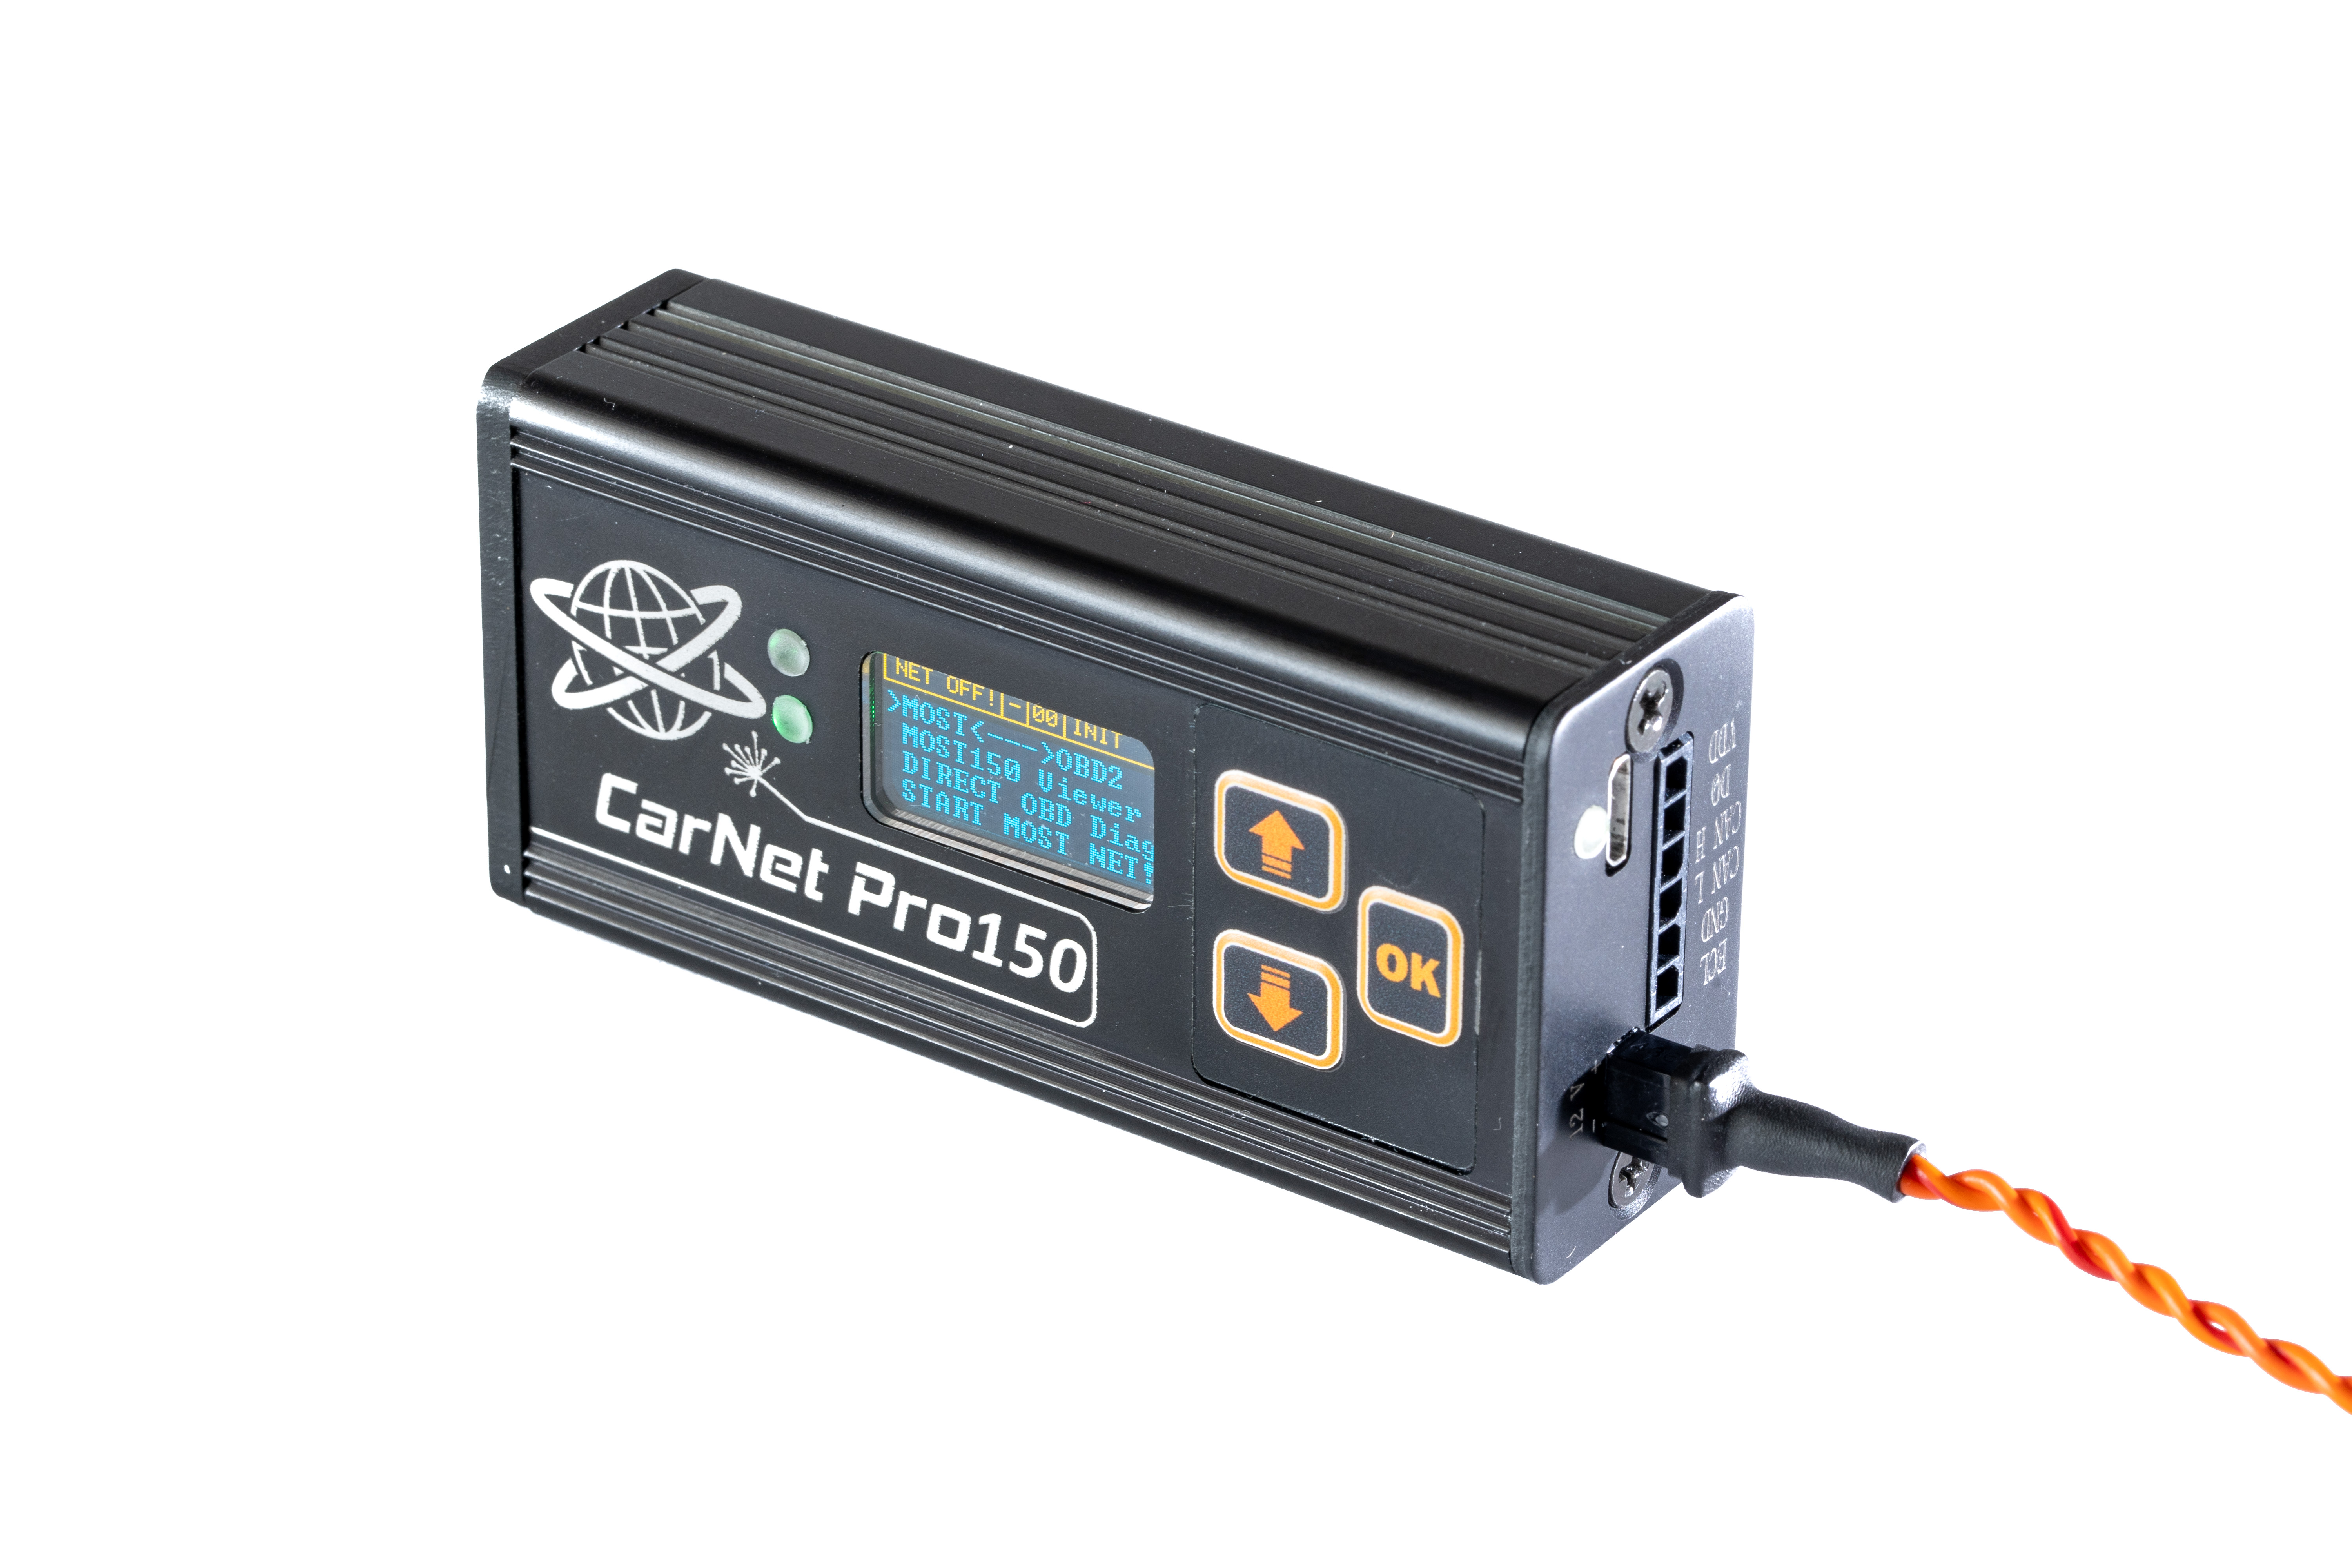 CarNet Pro150 No Tiene Ningún Competidor Diseño Excepcional 100% Dispositivo Único Y Profesional Basado En El Sistema MOST Para Diagnóstico Automotriz Y Reprogramación De Módulos Electrónicos